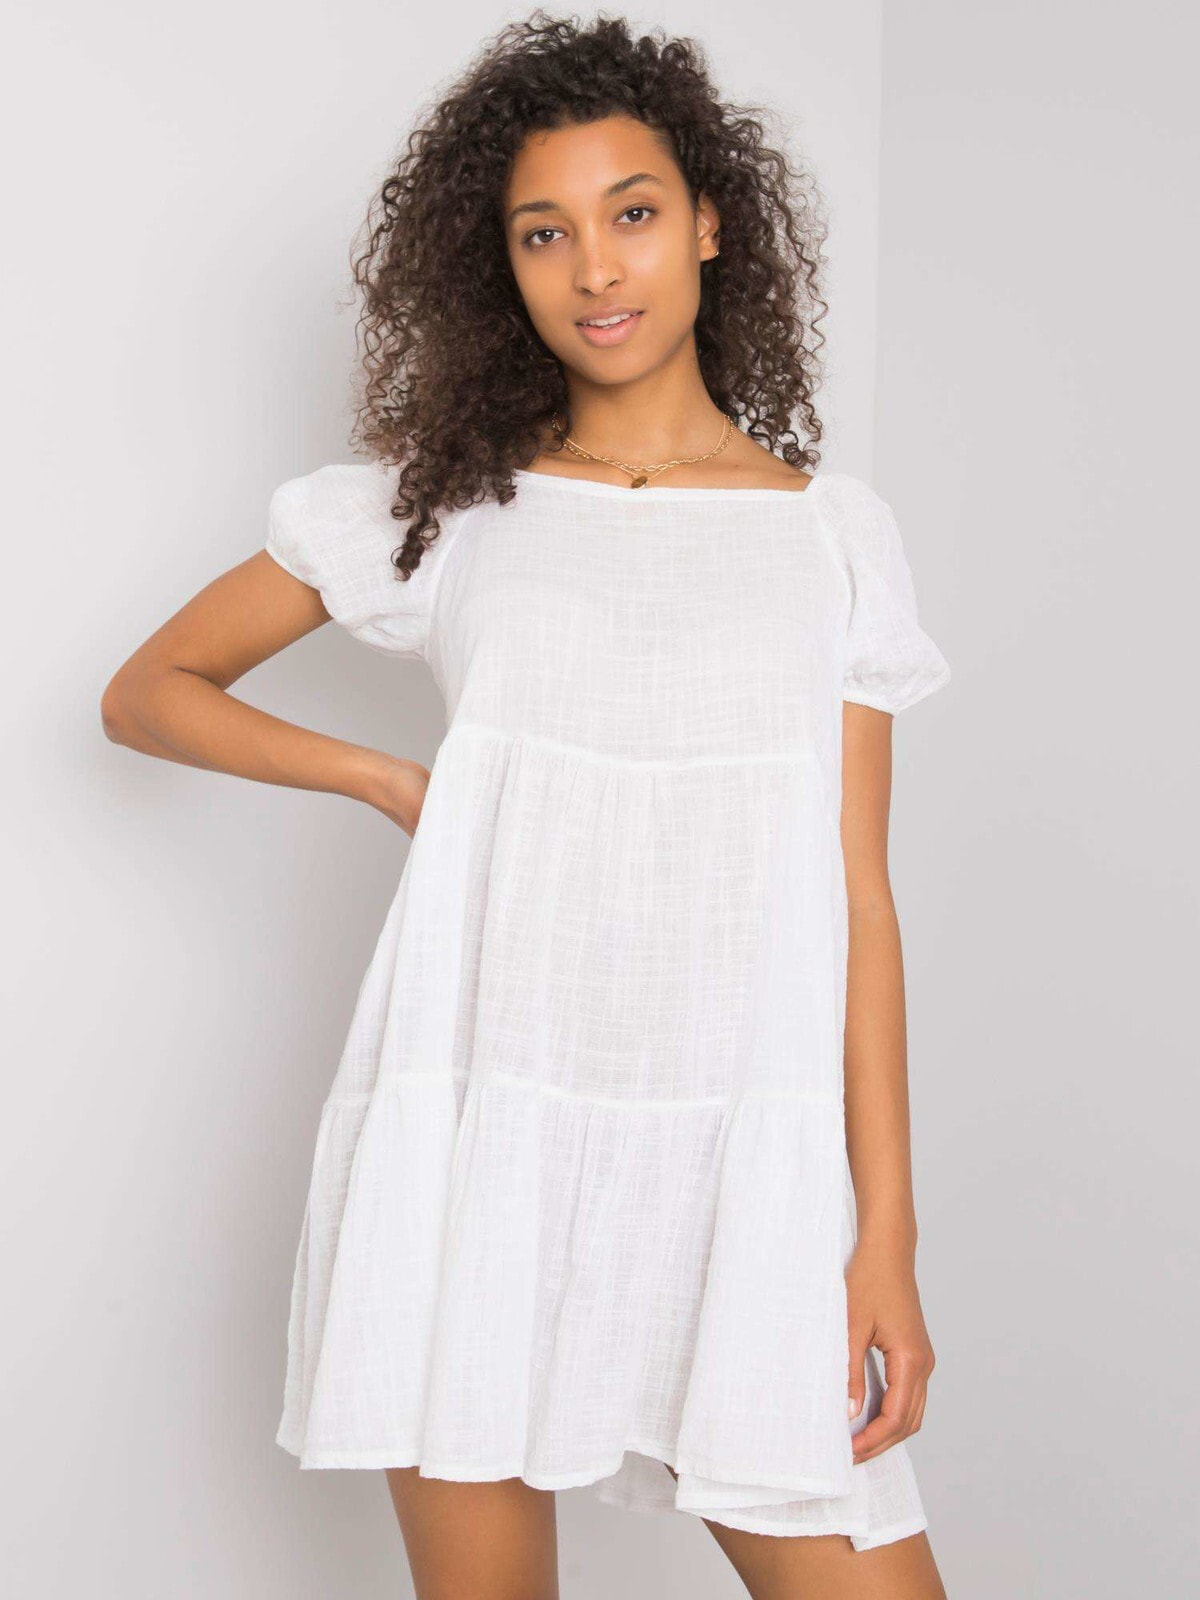 Женское летнее мини платье из хлопка с рукавами фонариками Factory Price